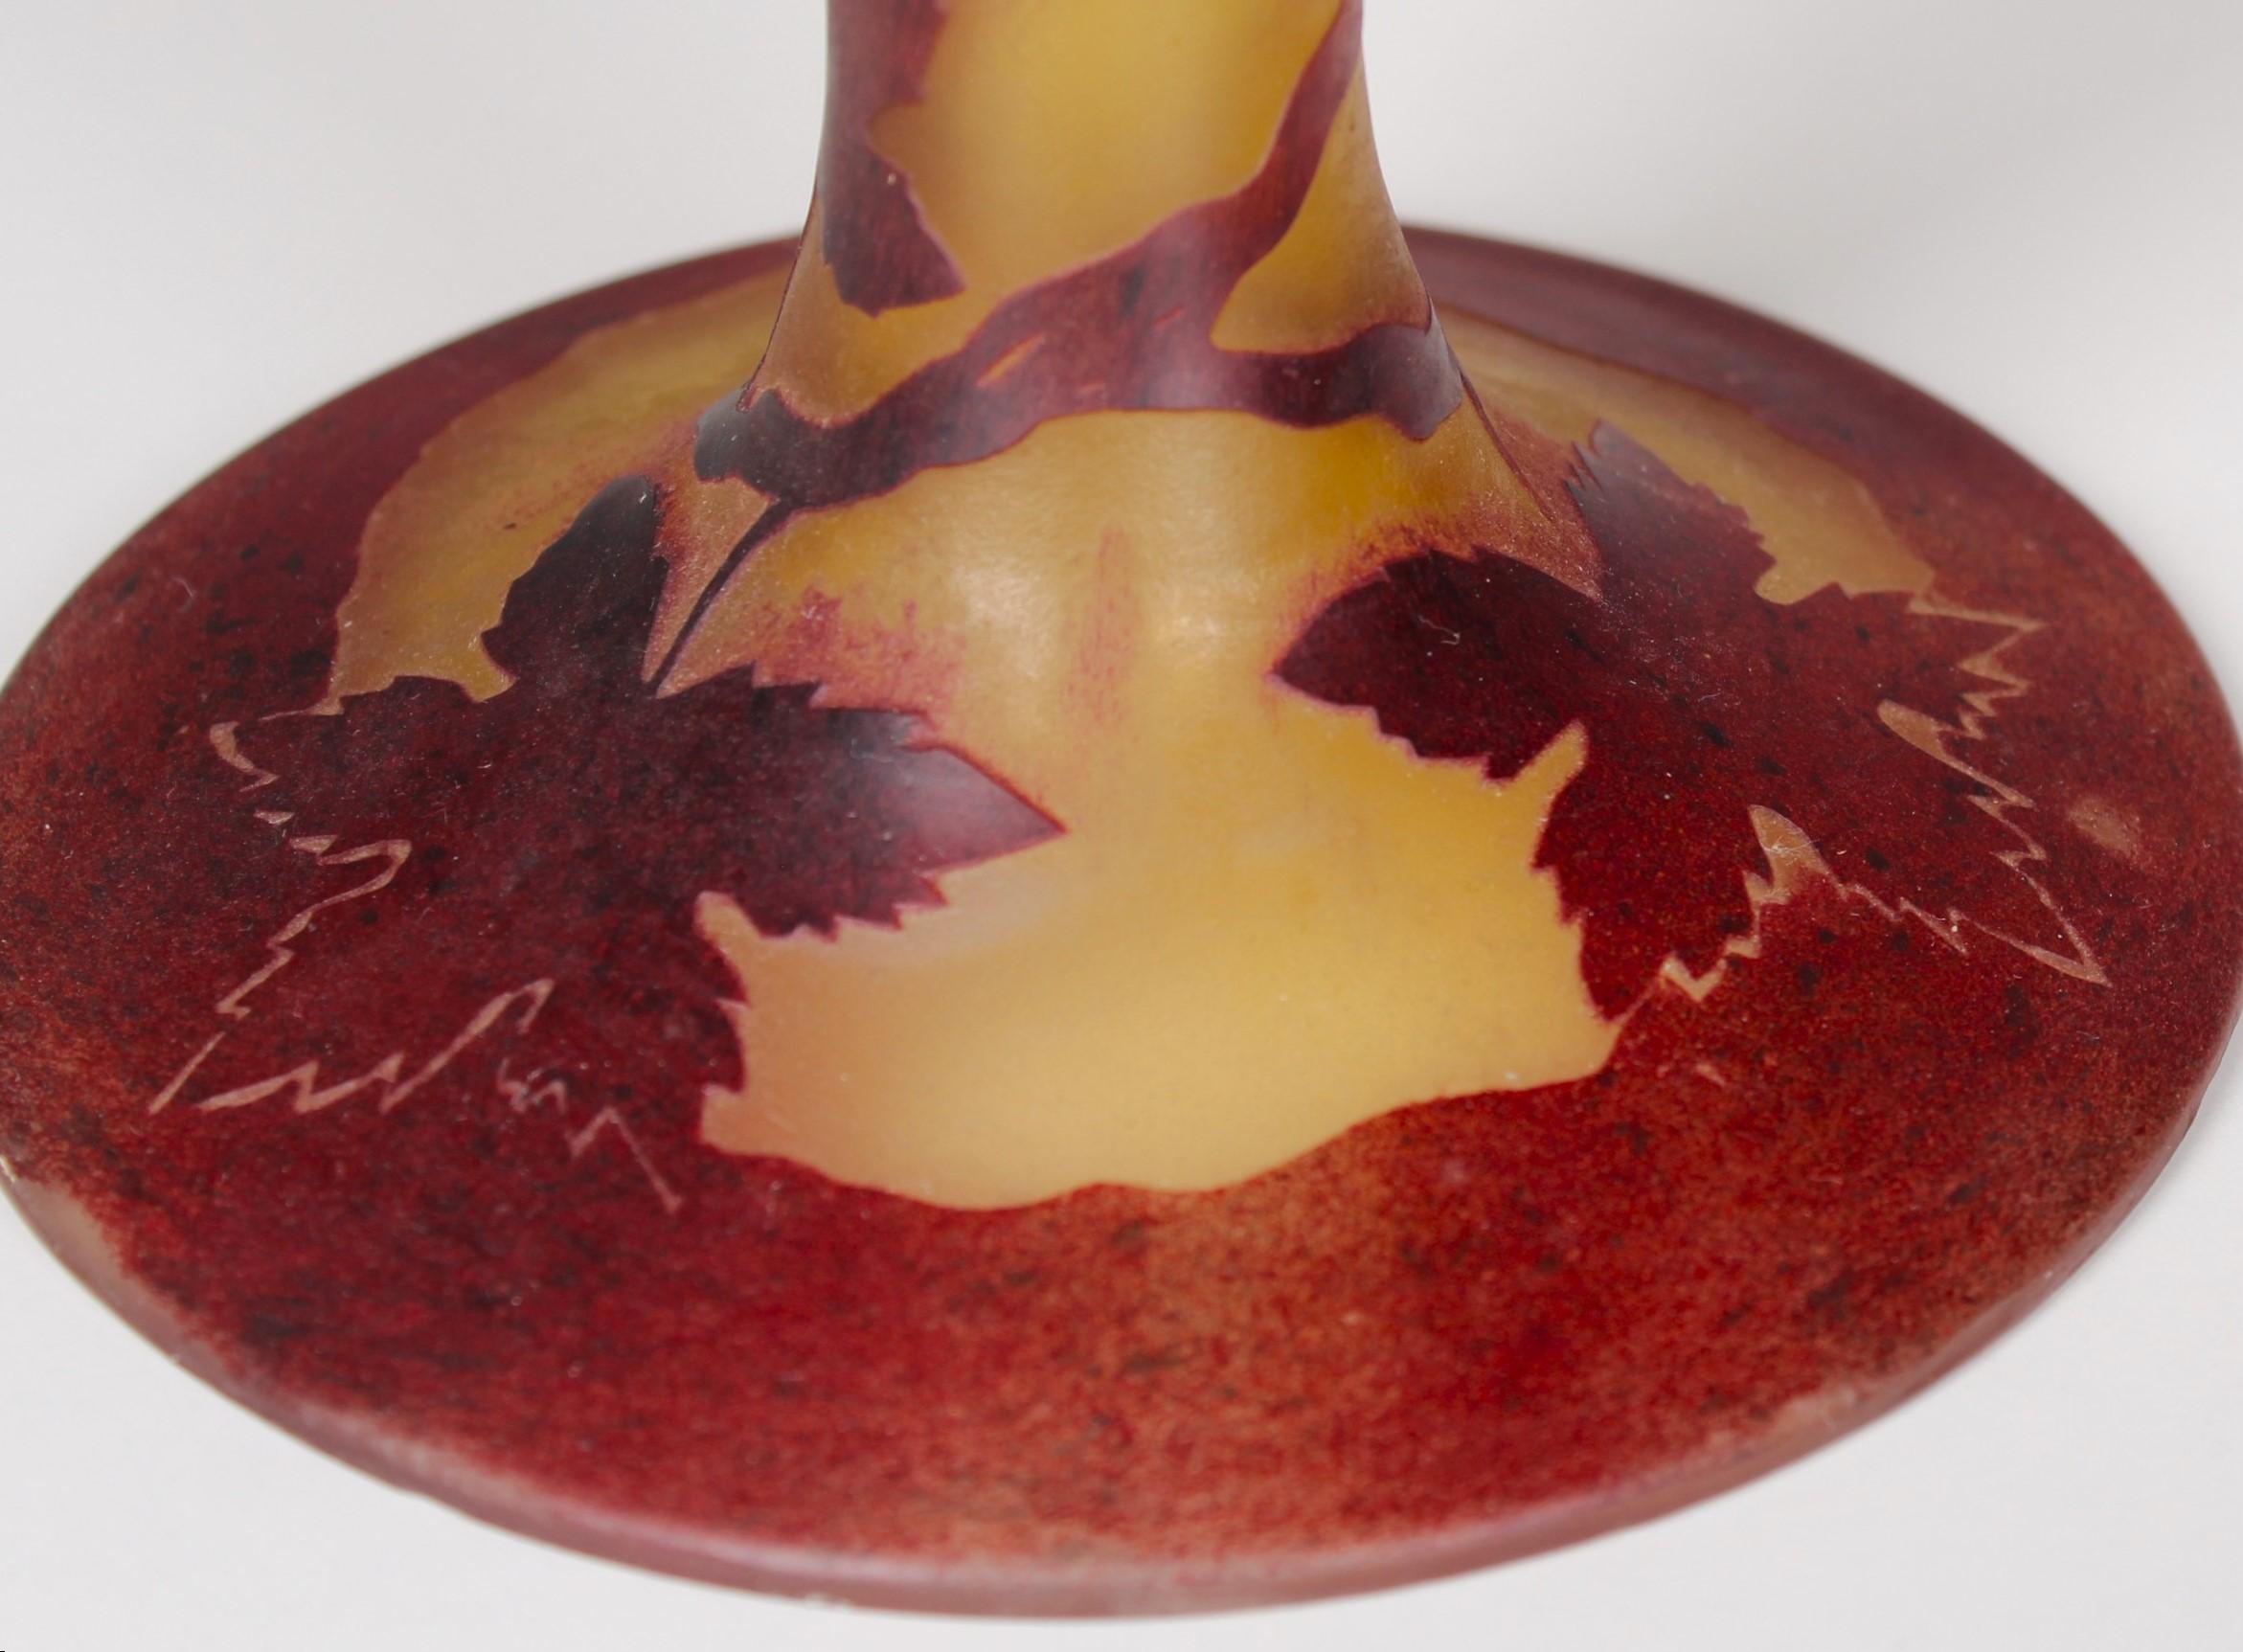 Merveilleuse lampe de table ancienne de l'époque de l'Arte Antiques.
Magnifique travail du verre jaune foncé avec des feuilles de vigne et des vrilles peintes en rouge.
Signé 